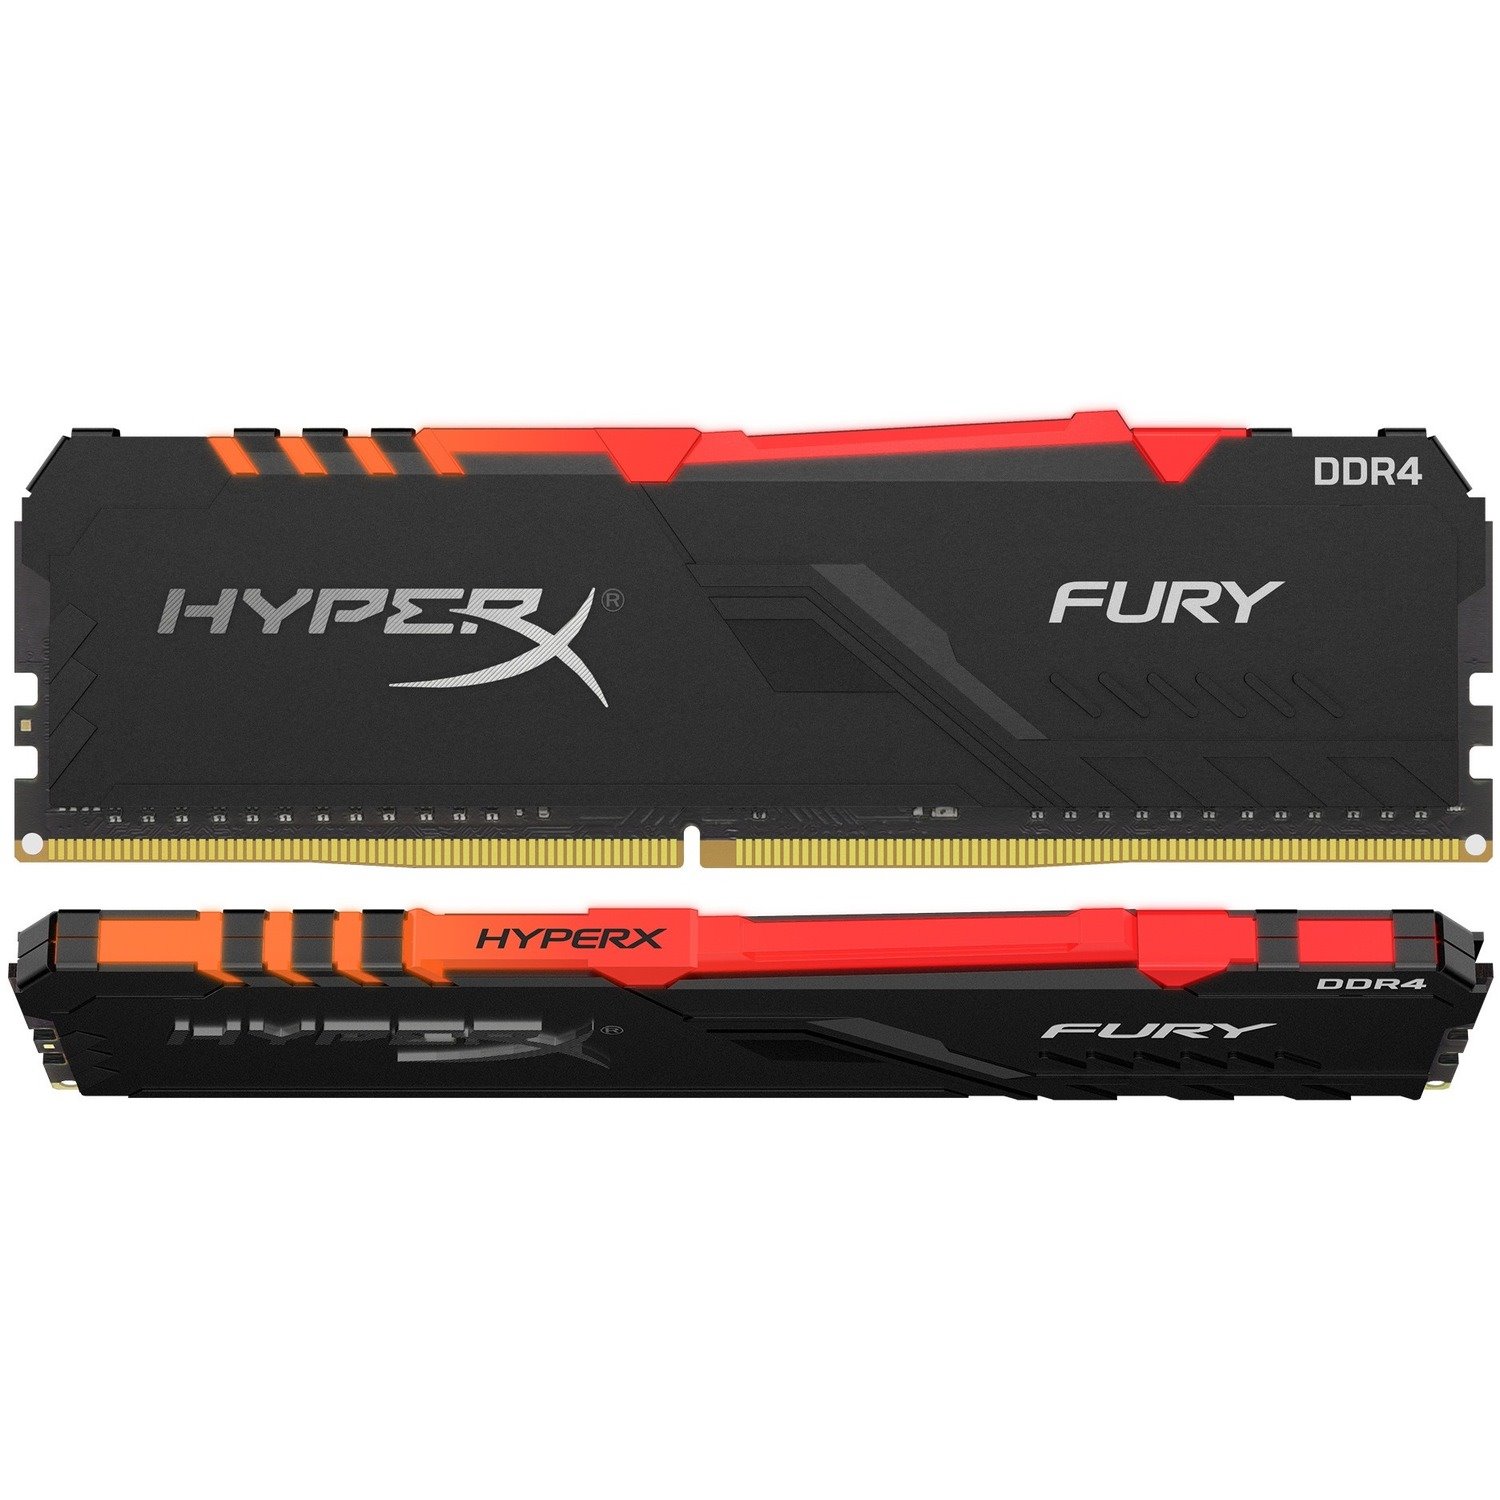 HyperX FURY 32GB (2 x 16GB) DDR4 SDRAM Memory Kit